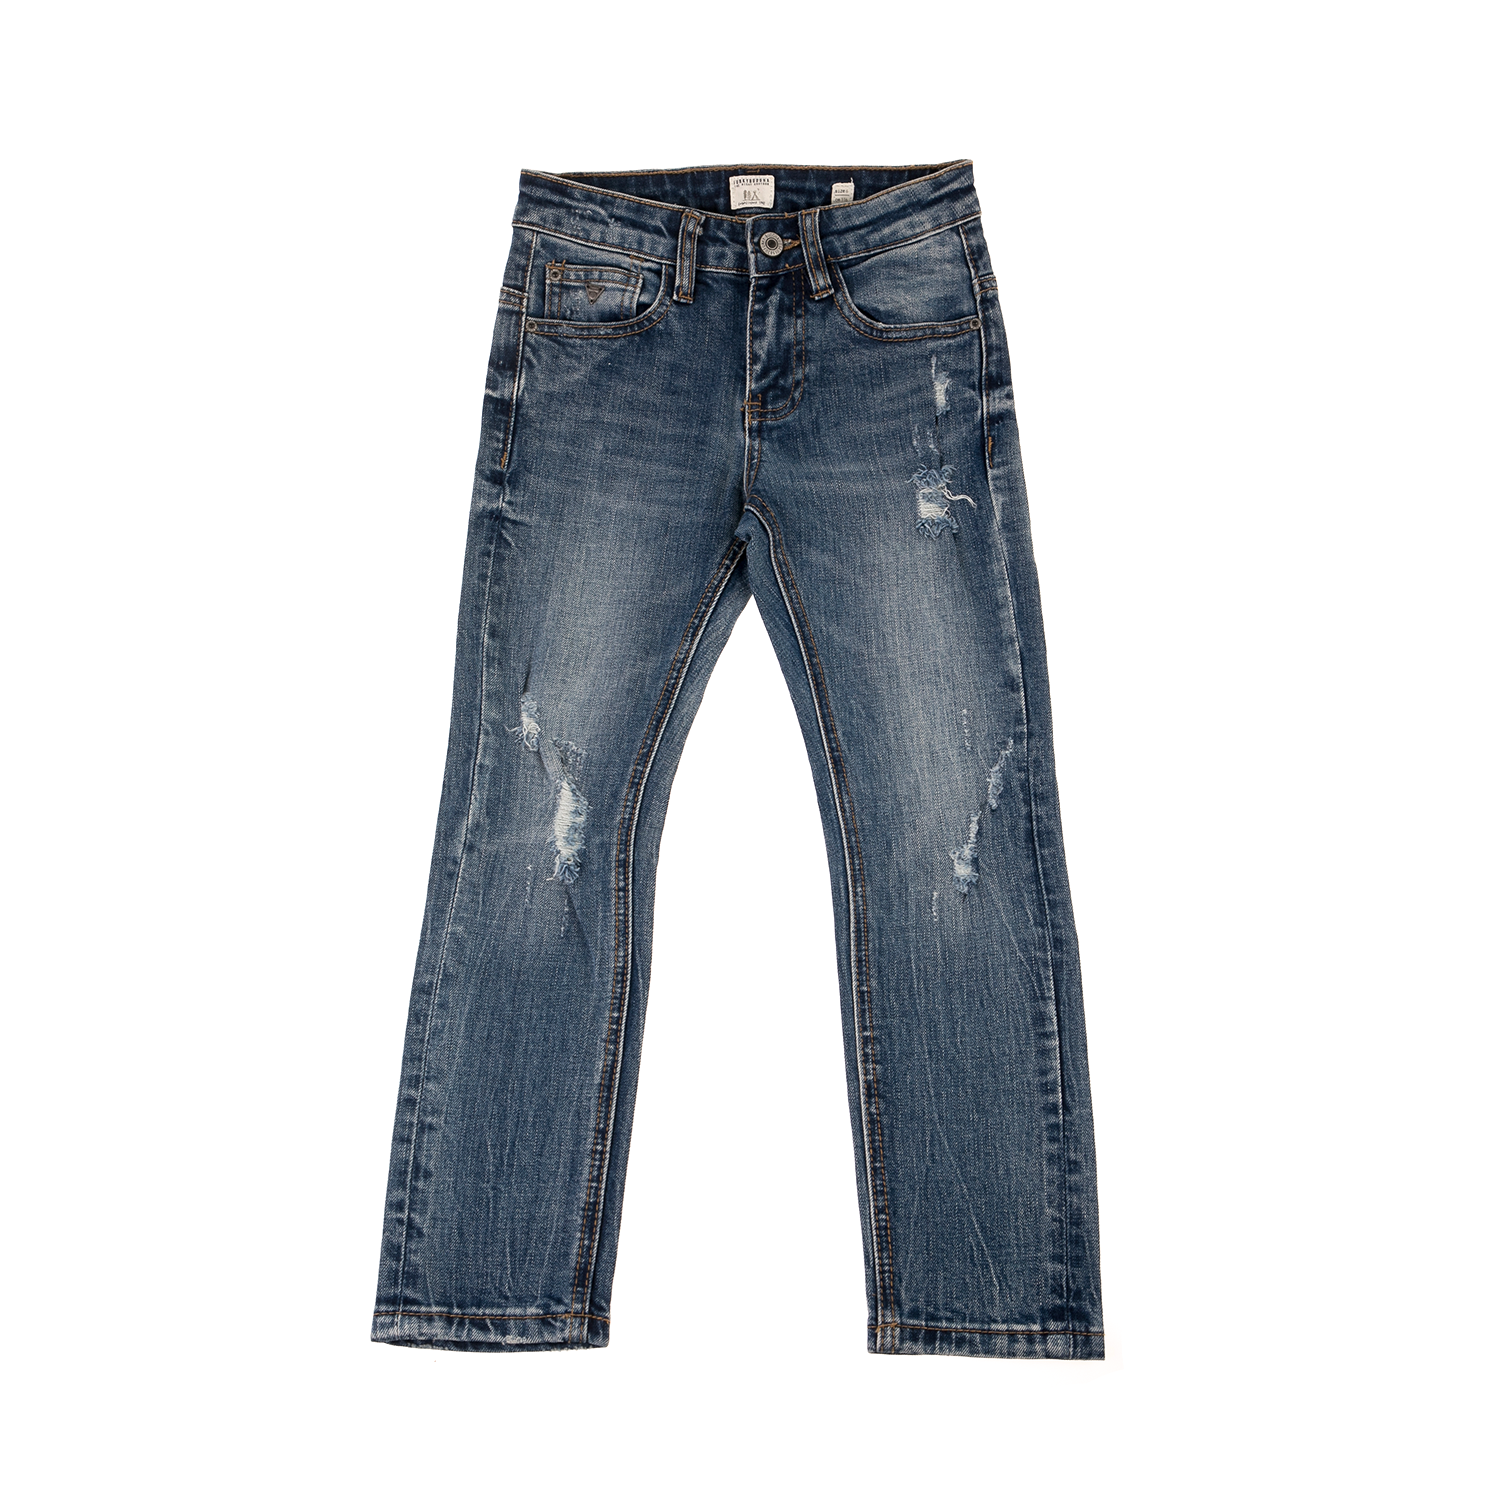 FUNKY BUDDHA - Αγορίστικο παντελόνι jean FUNKY BUDDHA ανοιχτό μπλε Παιδικά/Boys/Ρούχα/Παντελόνια